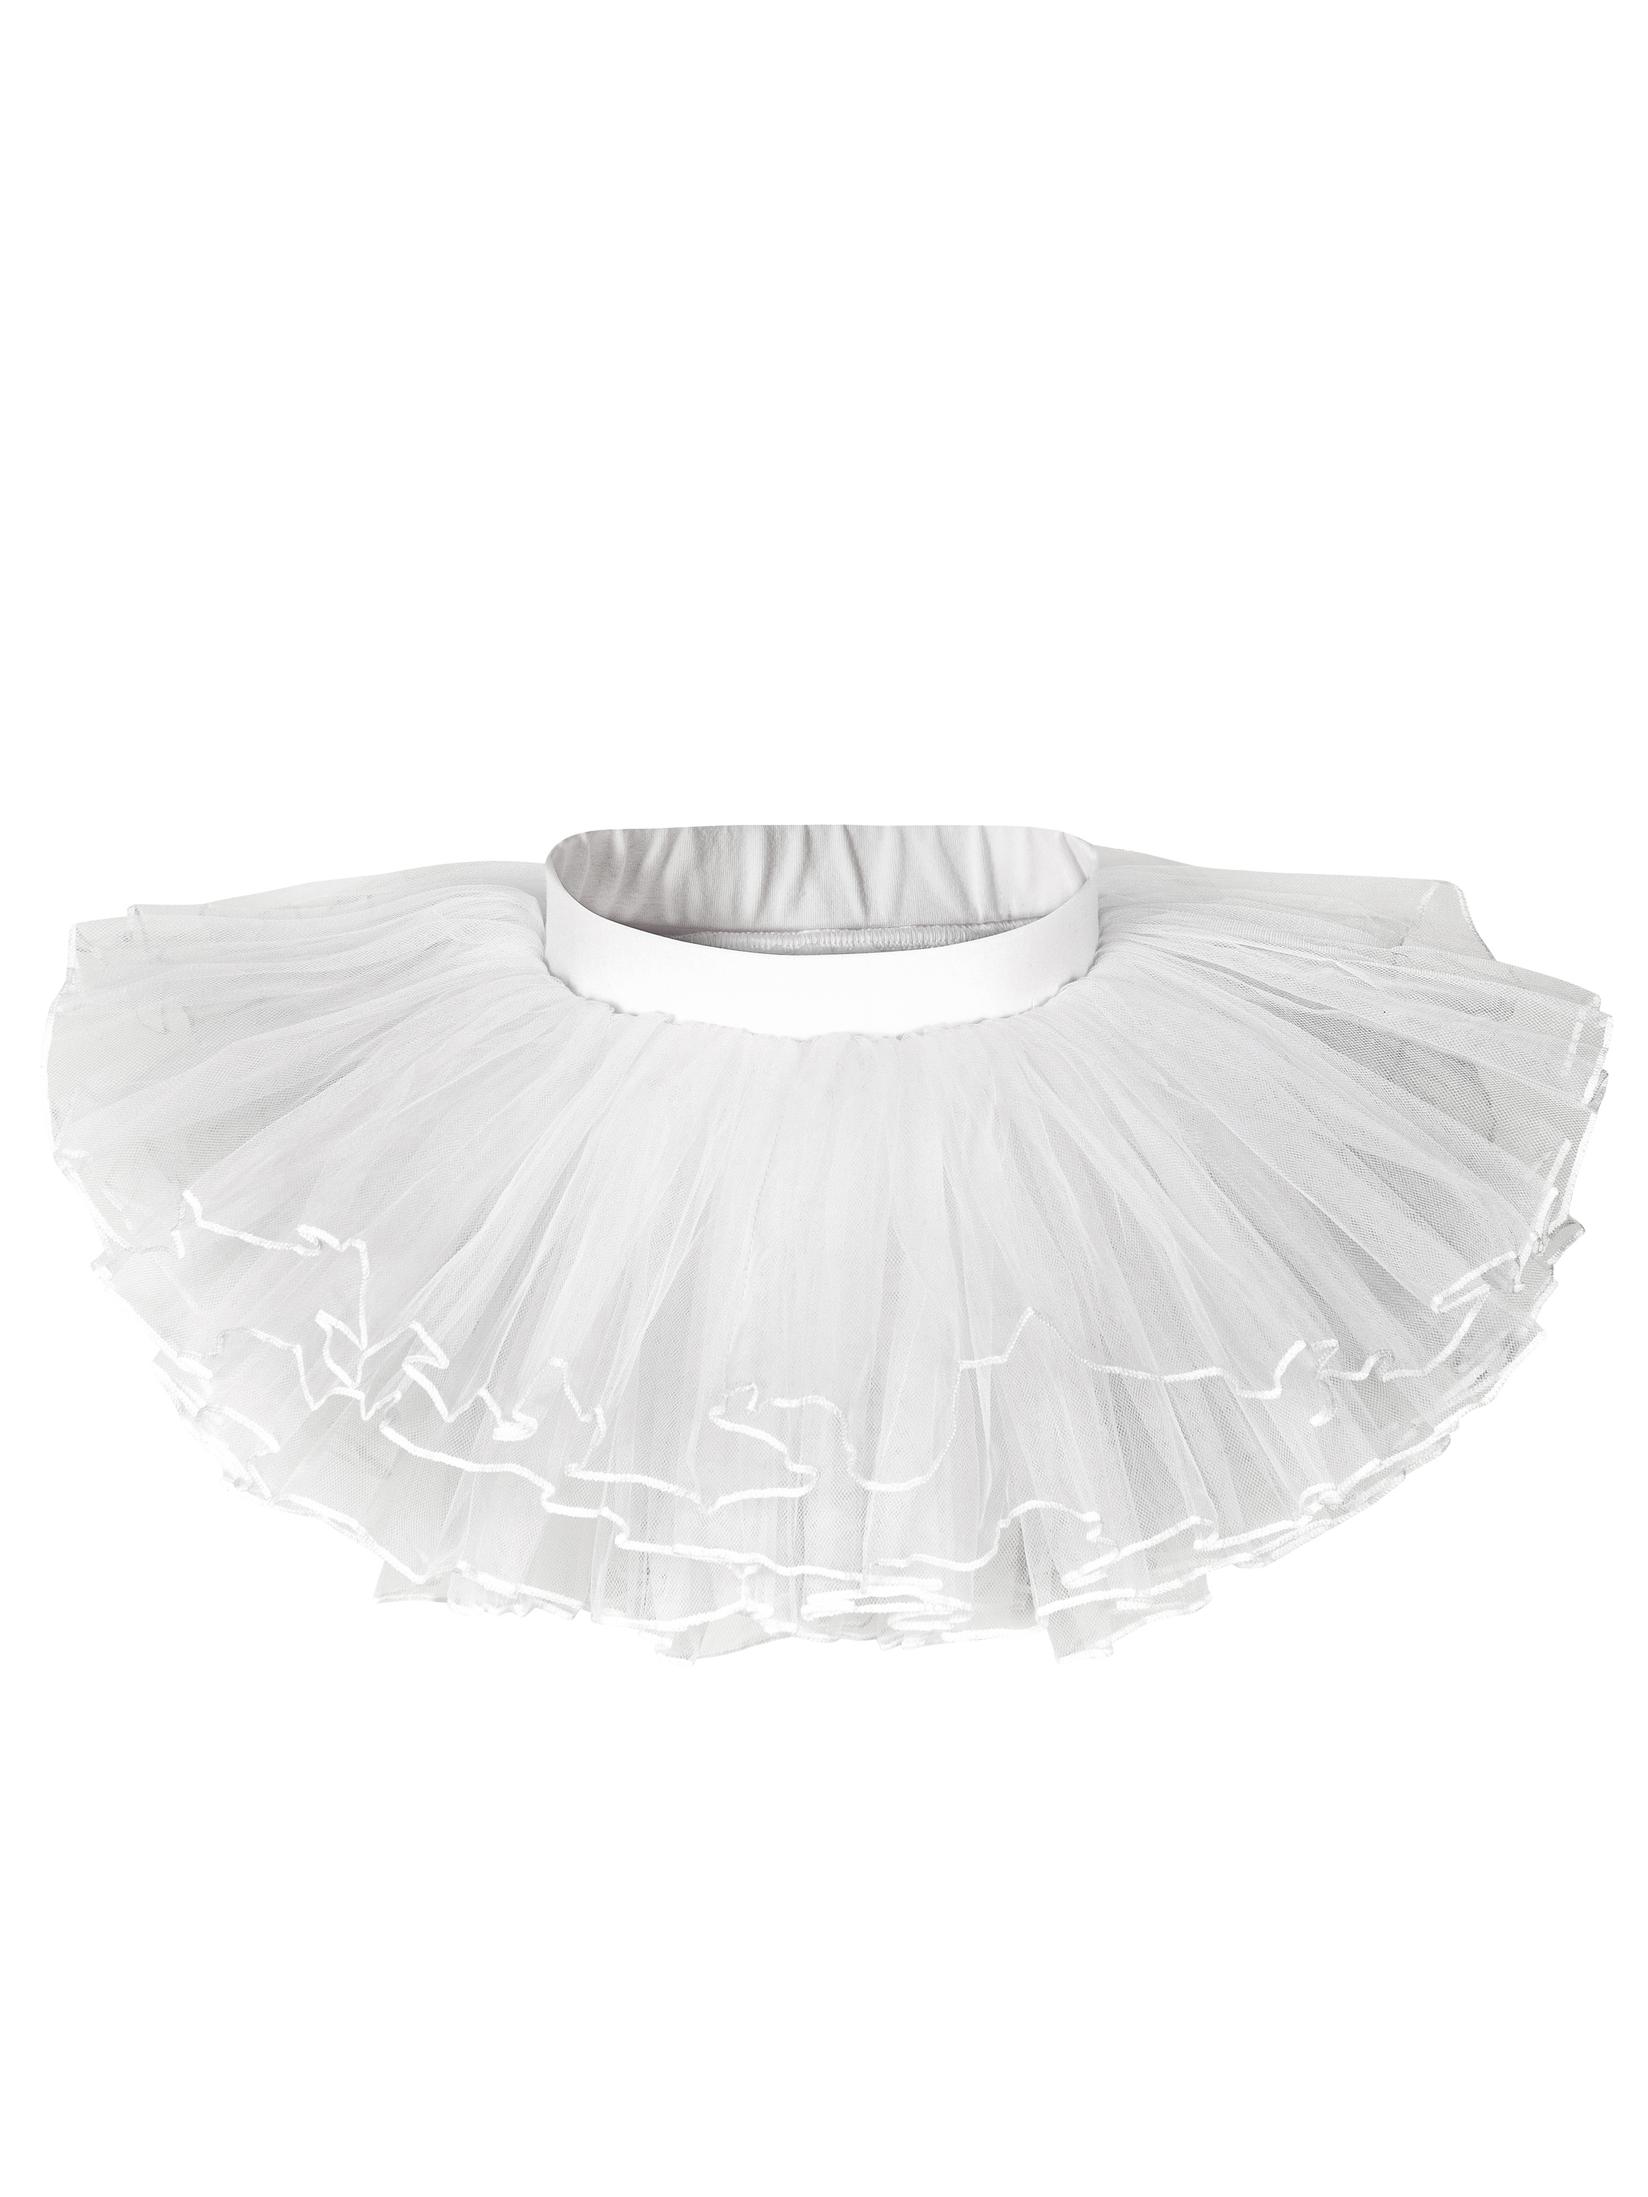 Selected image for GALA UNIQ Suknja za balet  za devojčice 1305W bela